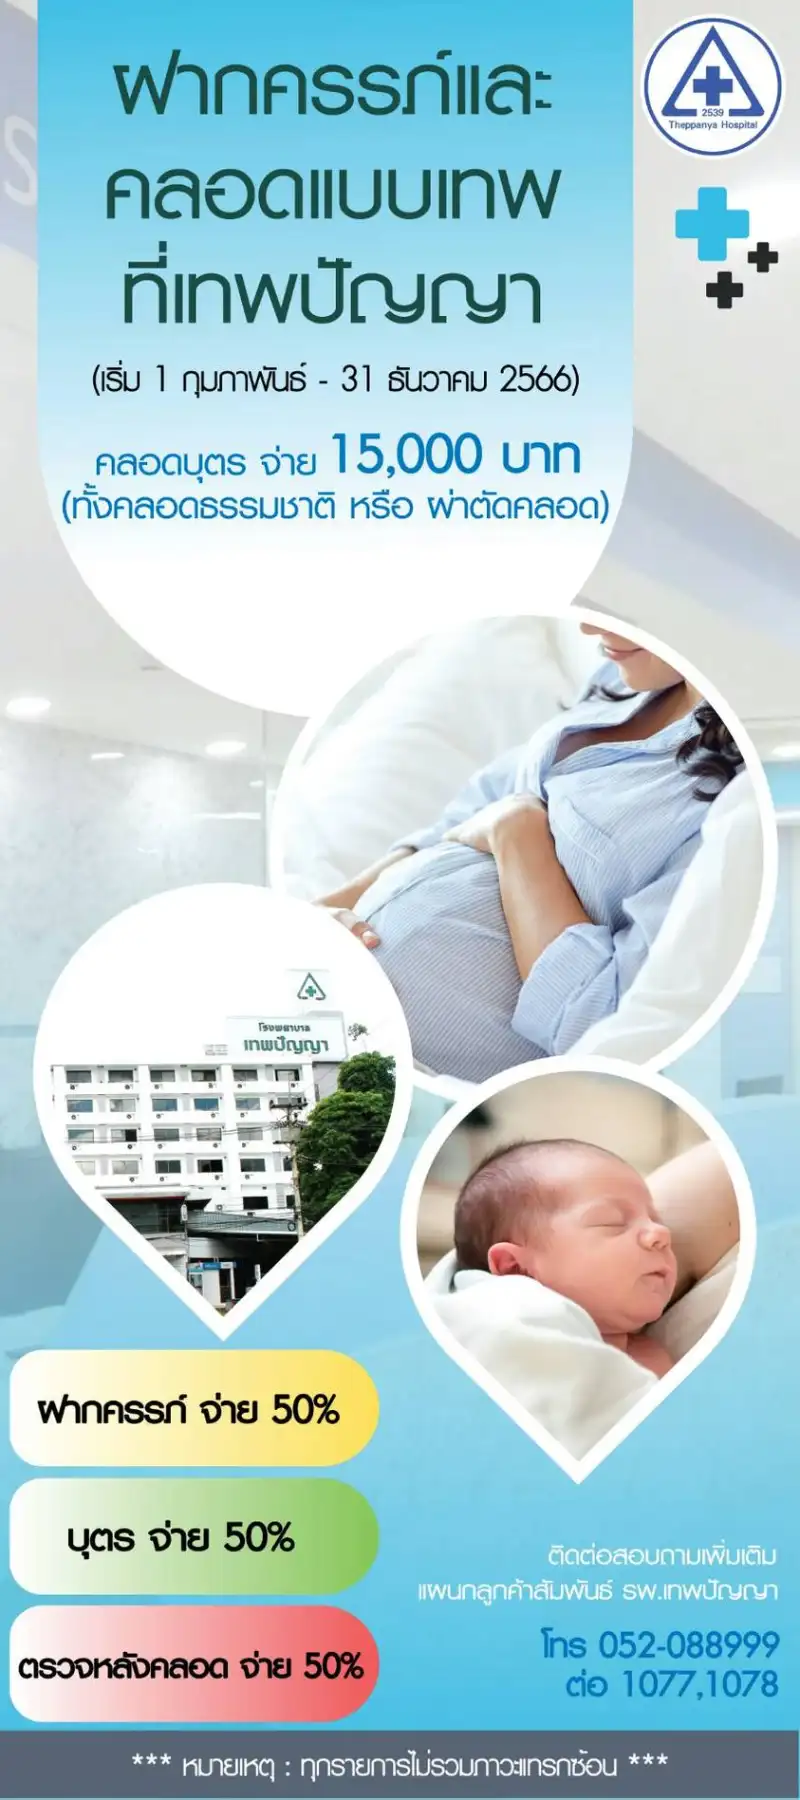 ฝากครรภ์ คลอดบุตร แบบเทพ ที่เทพปัญญา จ่าย 15,000 บาท  Healthserv.net